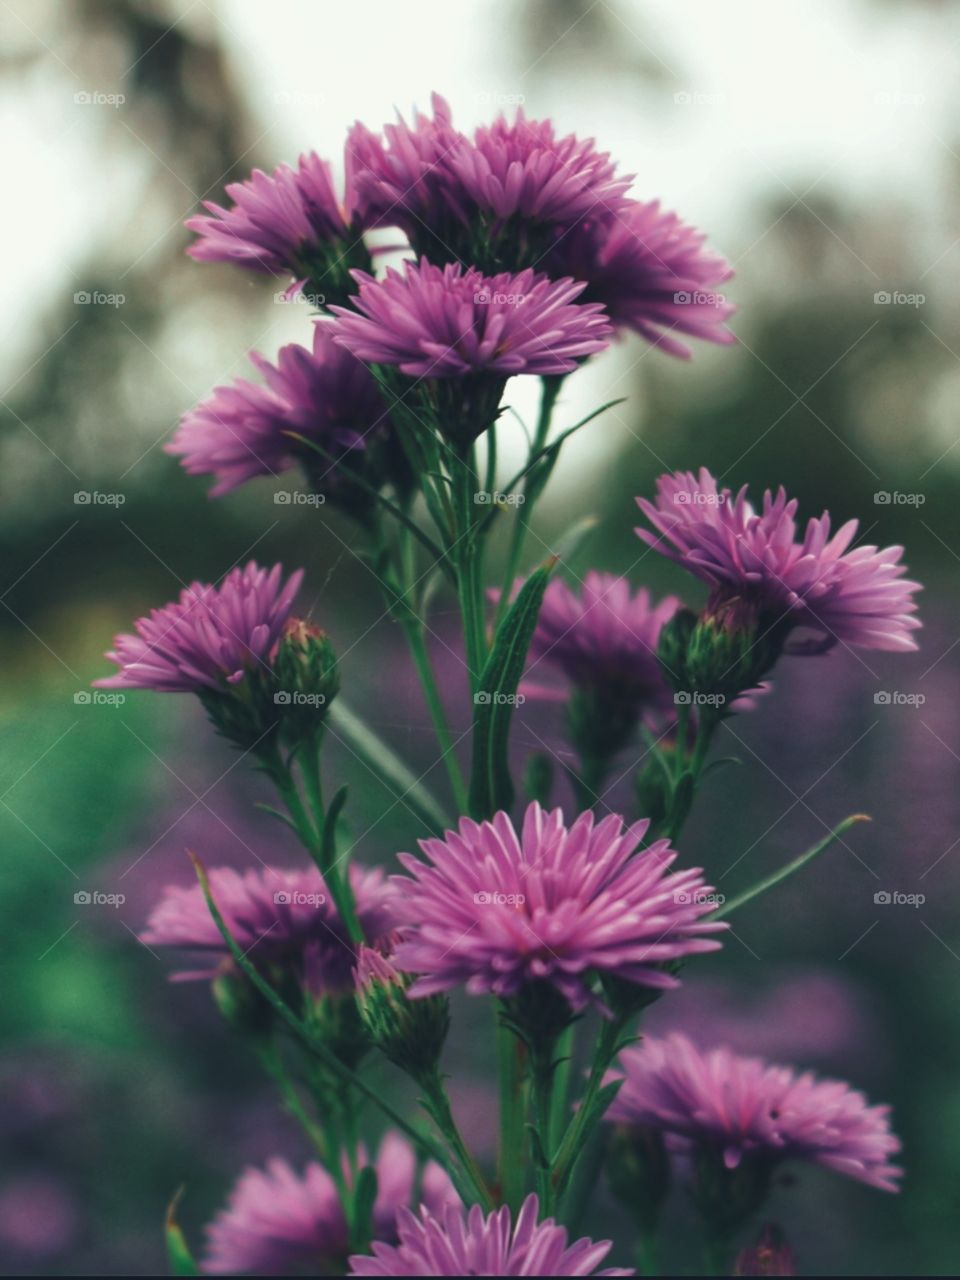 buetyfull flower(maschithsuriya photography)